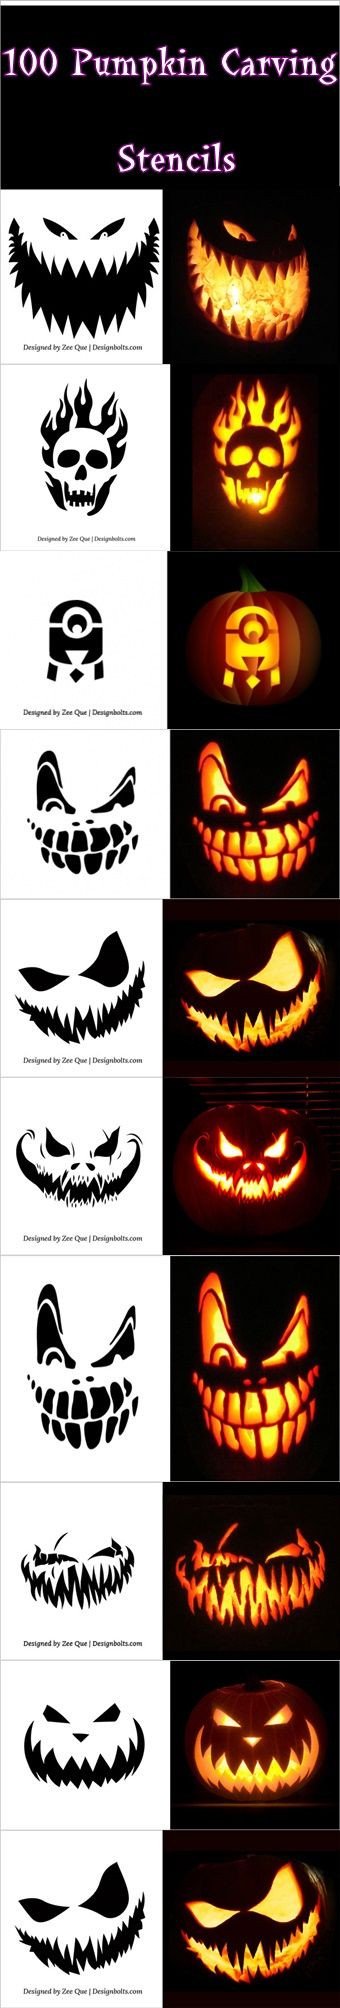 100 Pumpkin Carving Stencils pumpkin carving stencils